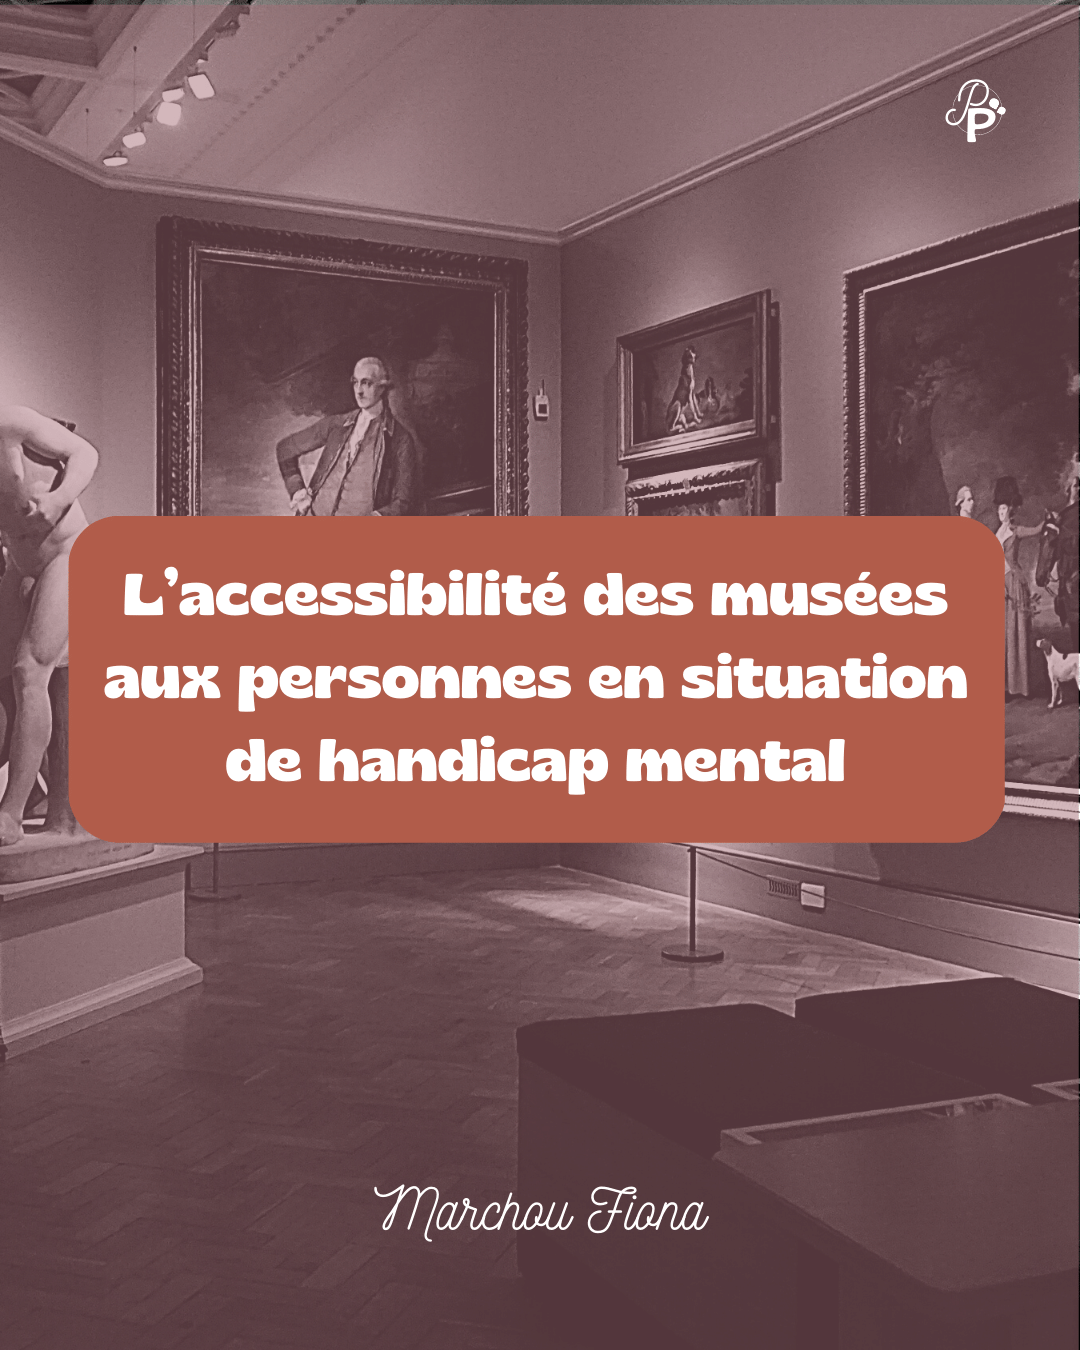 L’accessibilité des musées aux personnes en situation 
de handicap mental
